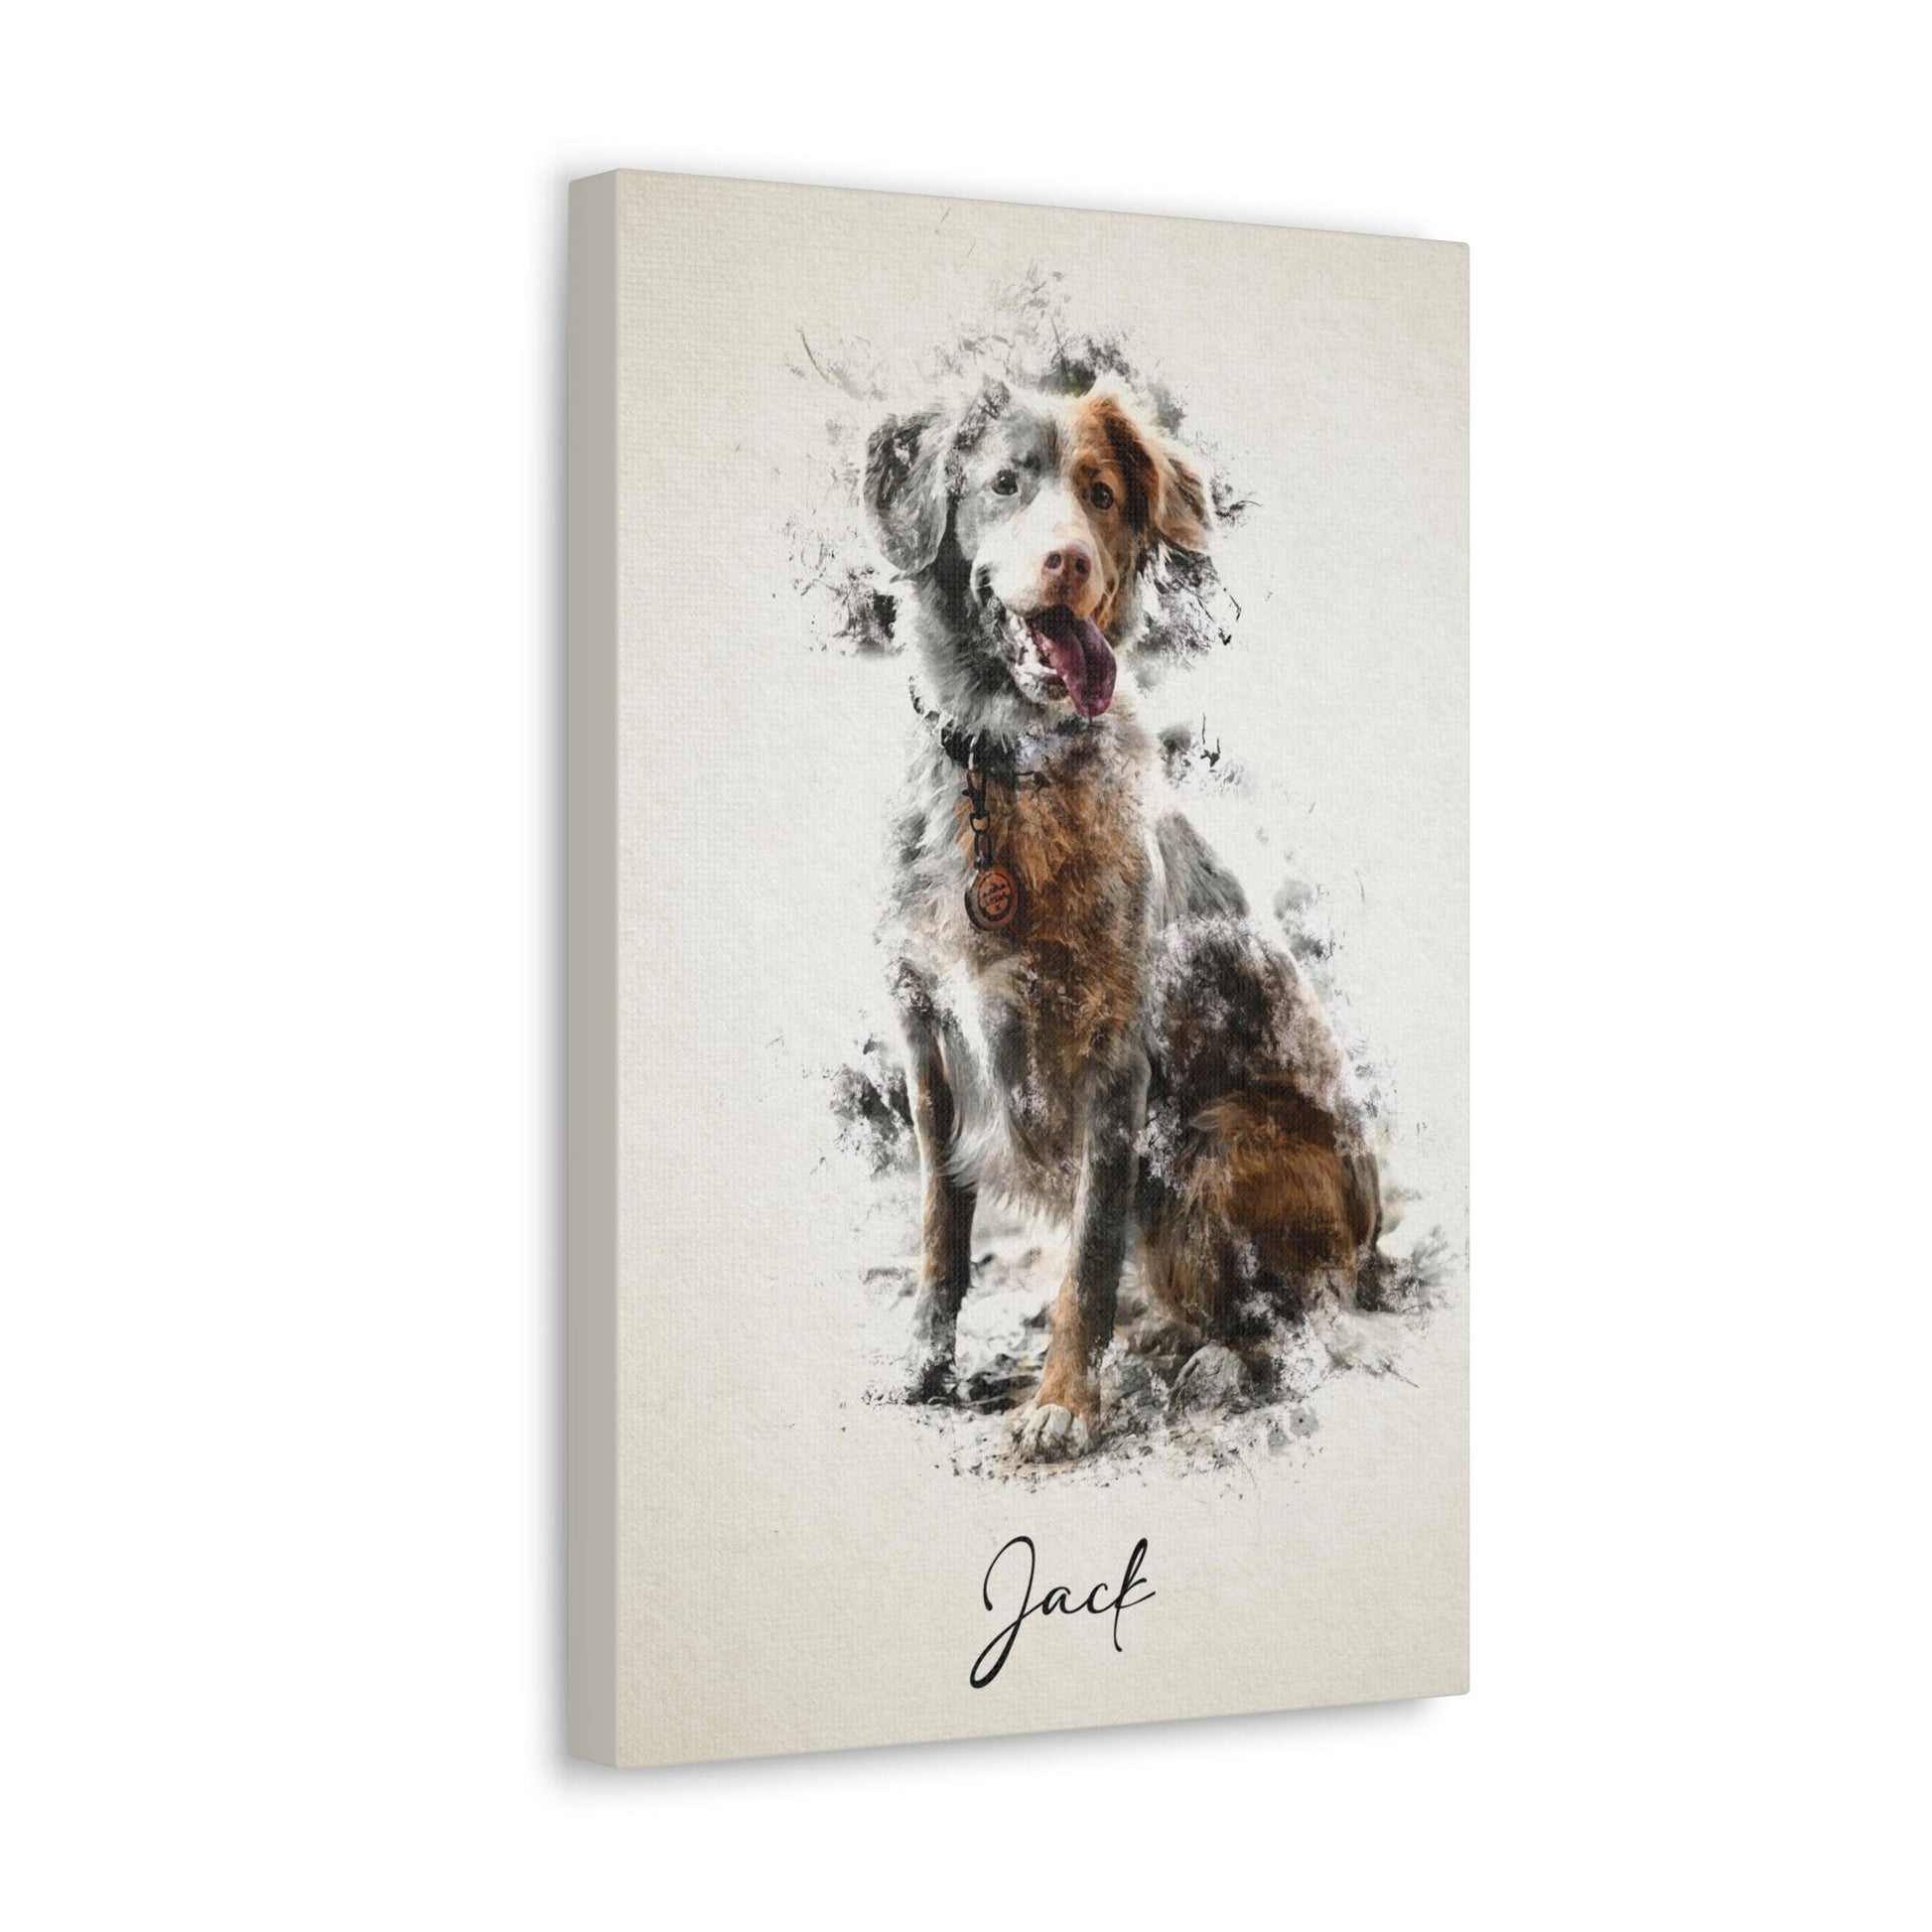 Vibrant custom pet portrait on stretched canvas, capturing unique essence-dog portrait 